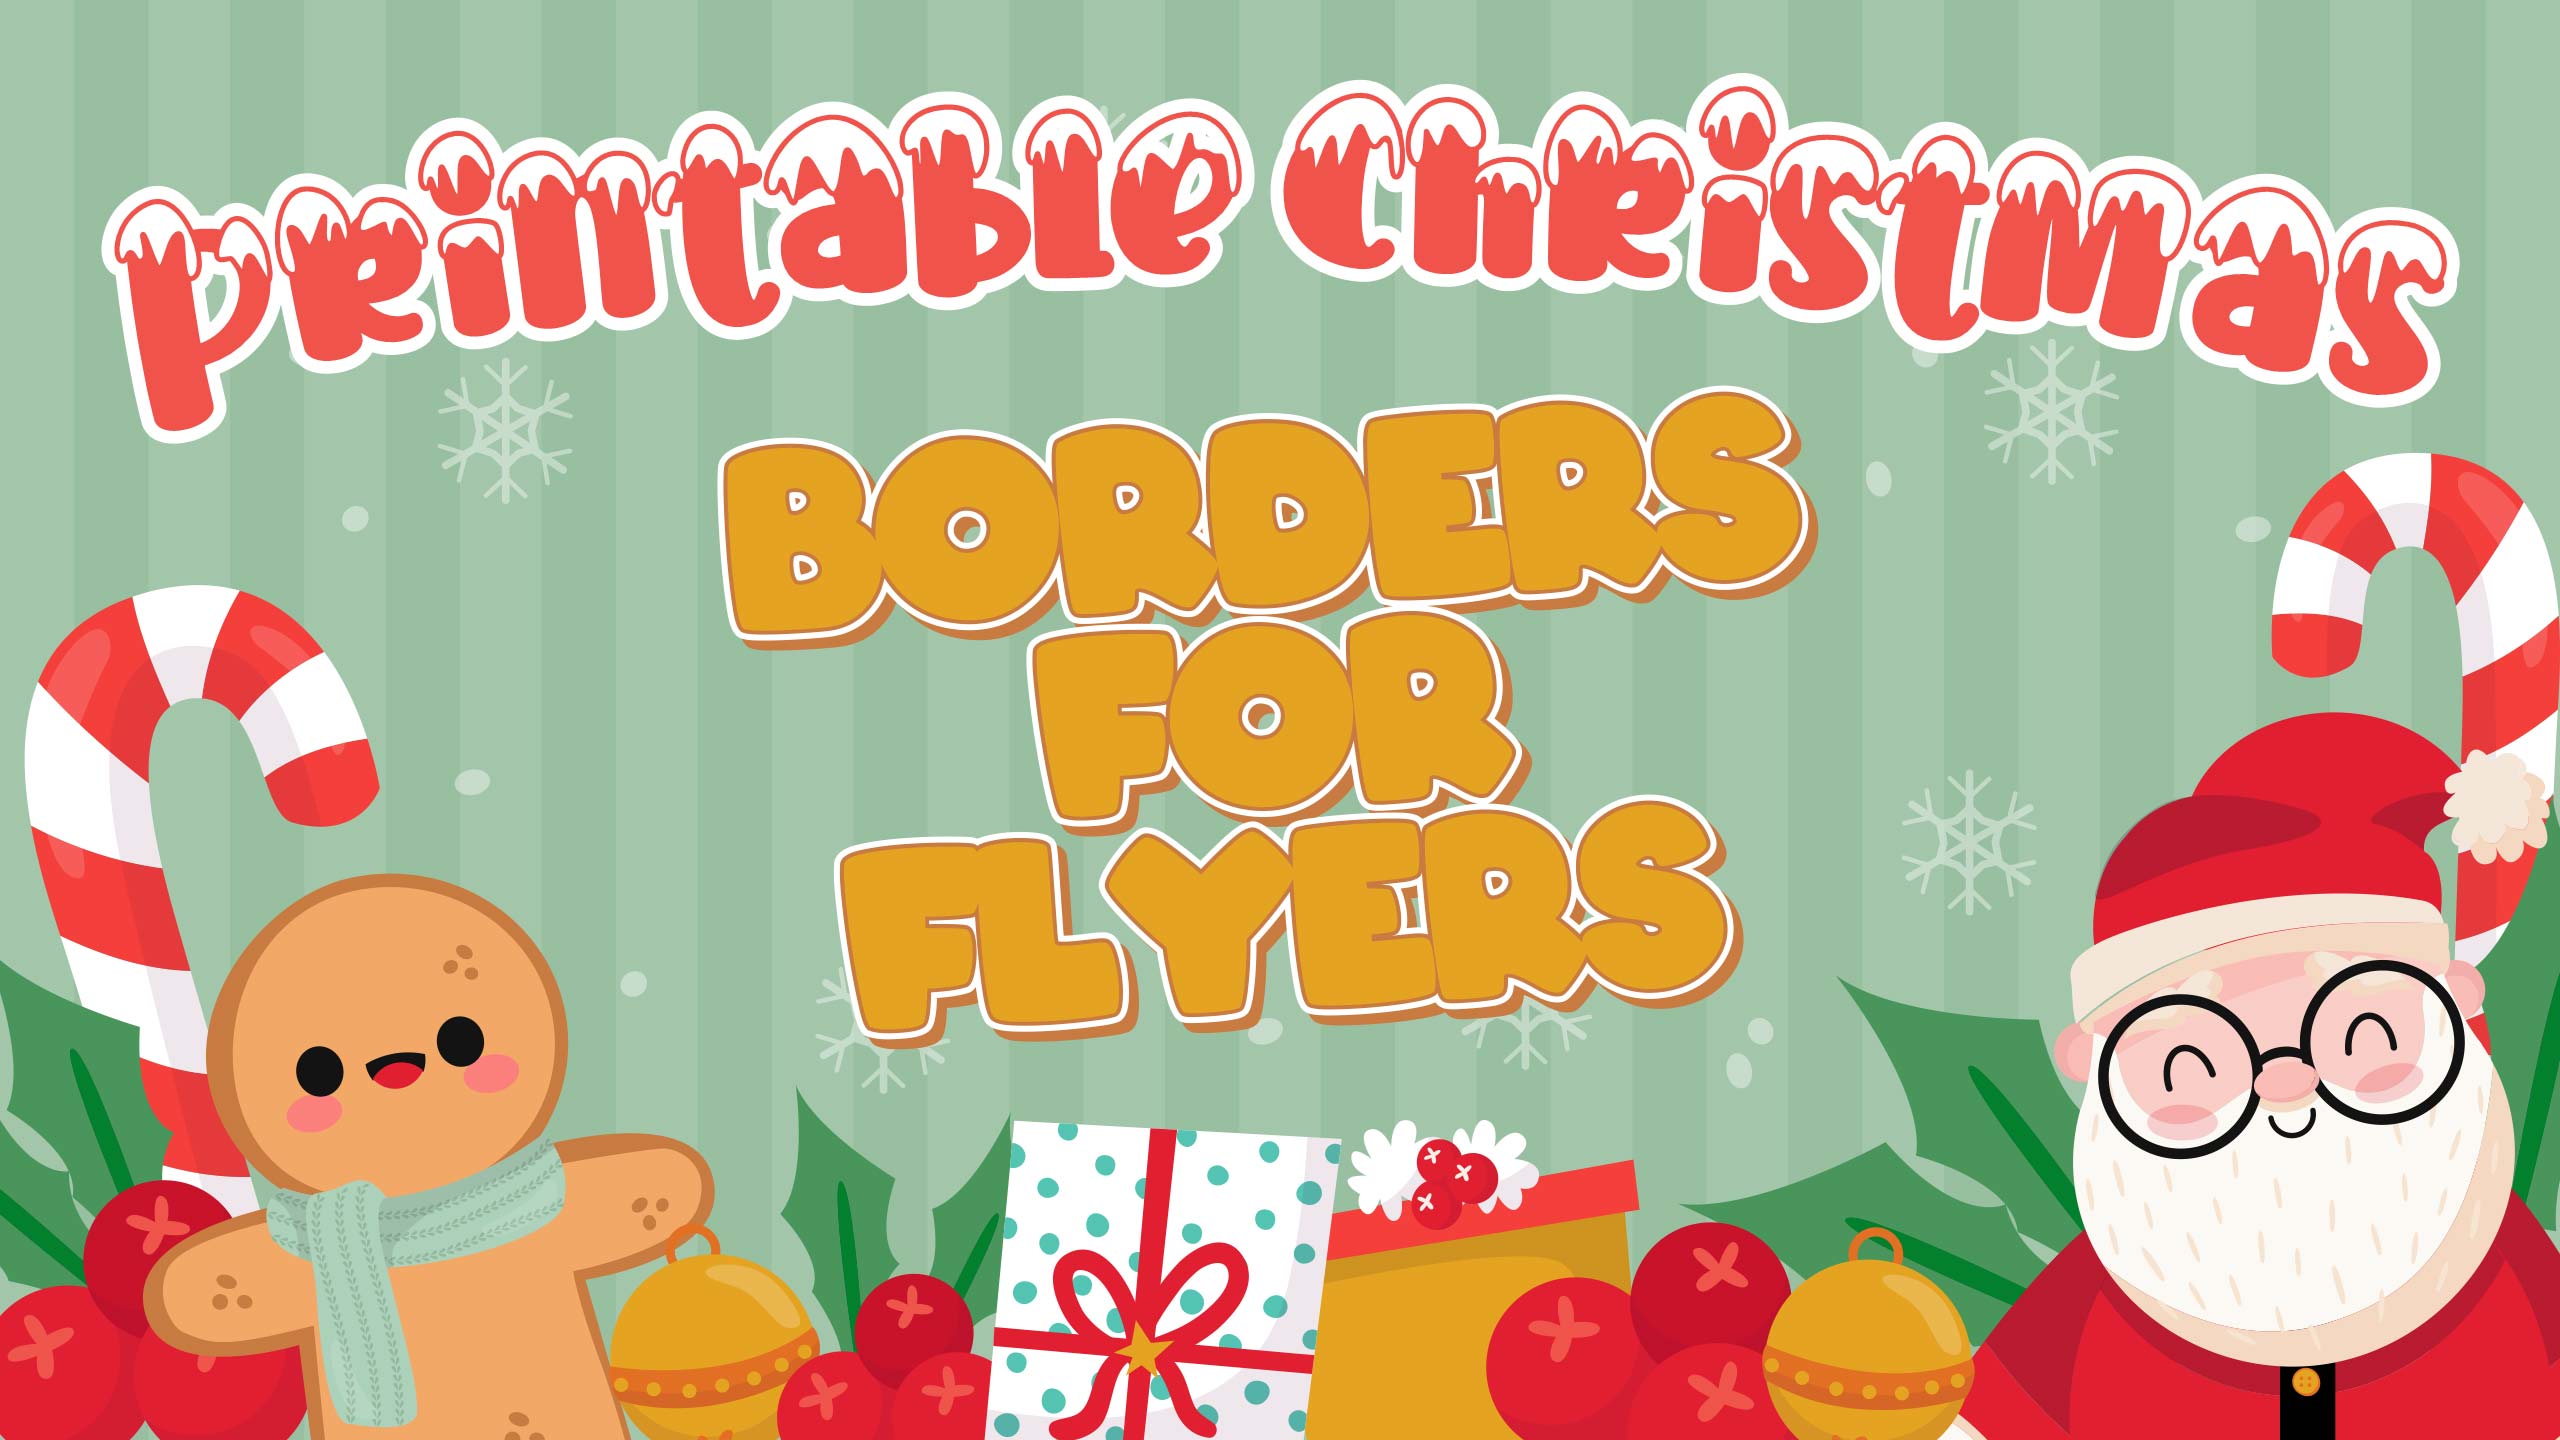 Printable Christmas Borders For Flyers